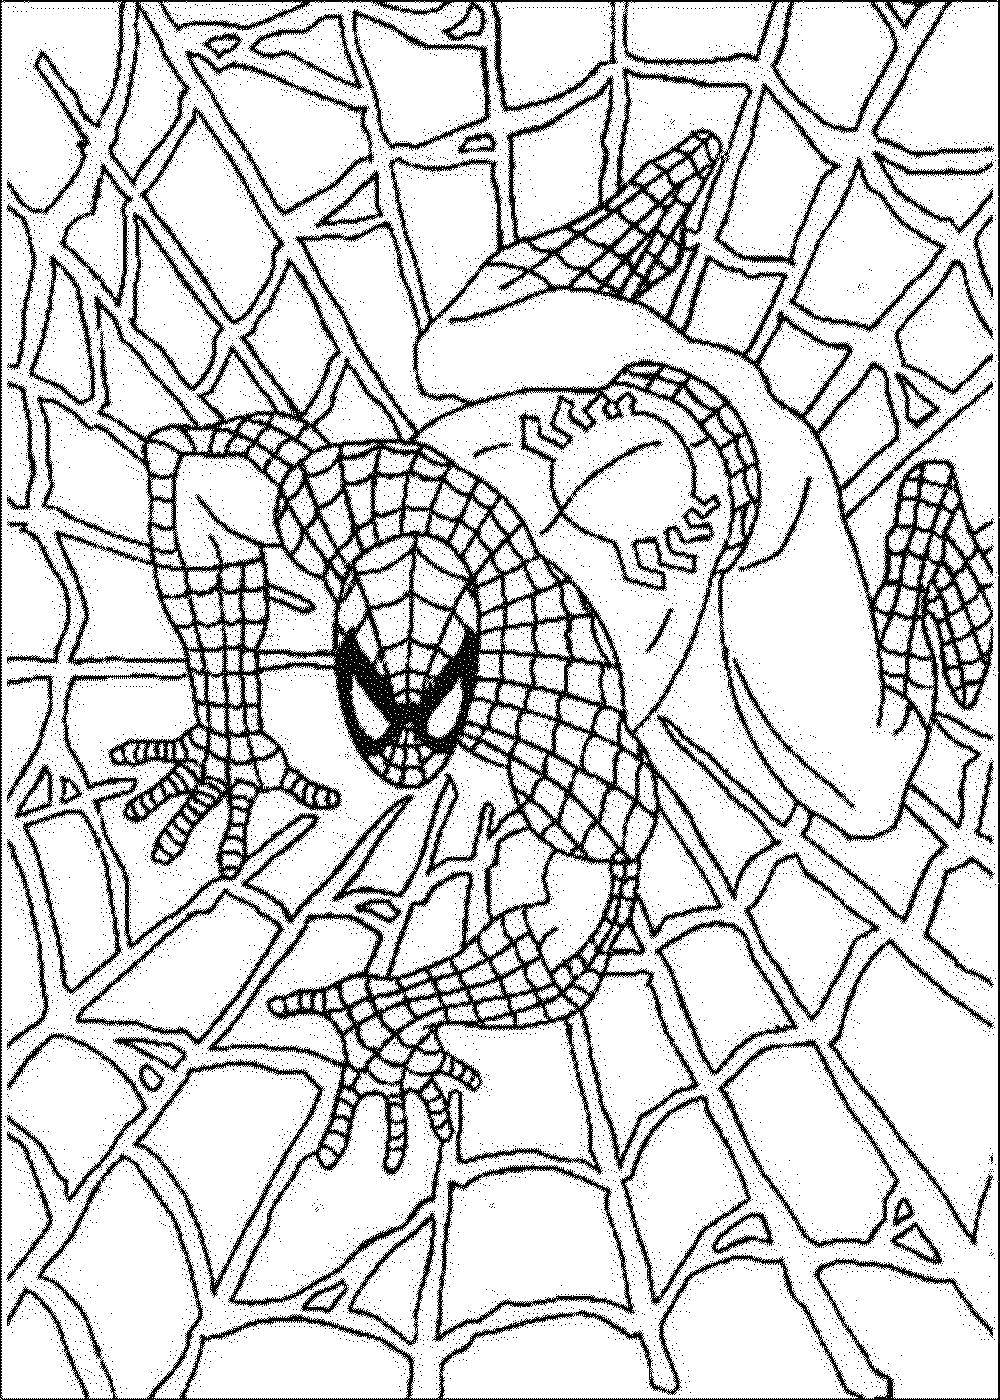 Название: Раскраска Человек паук на паутине. Категория: Персонаж из мультфильма. Теги: Персонаж из мультфильма, Человек Паук, комиксы.